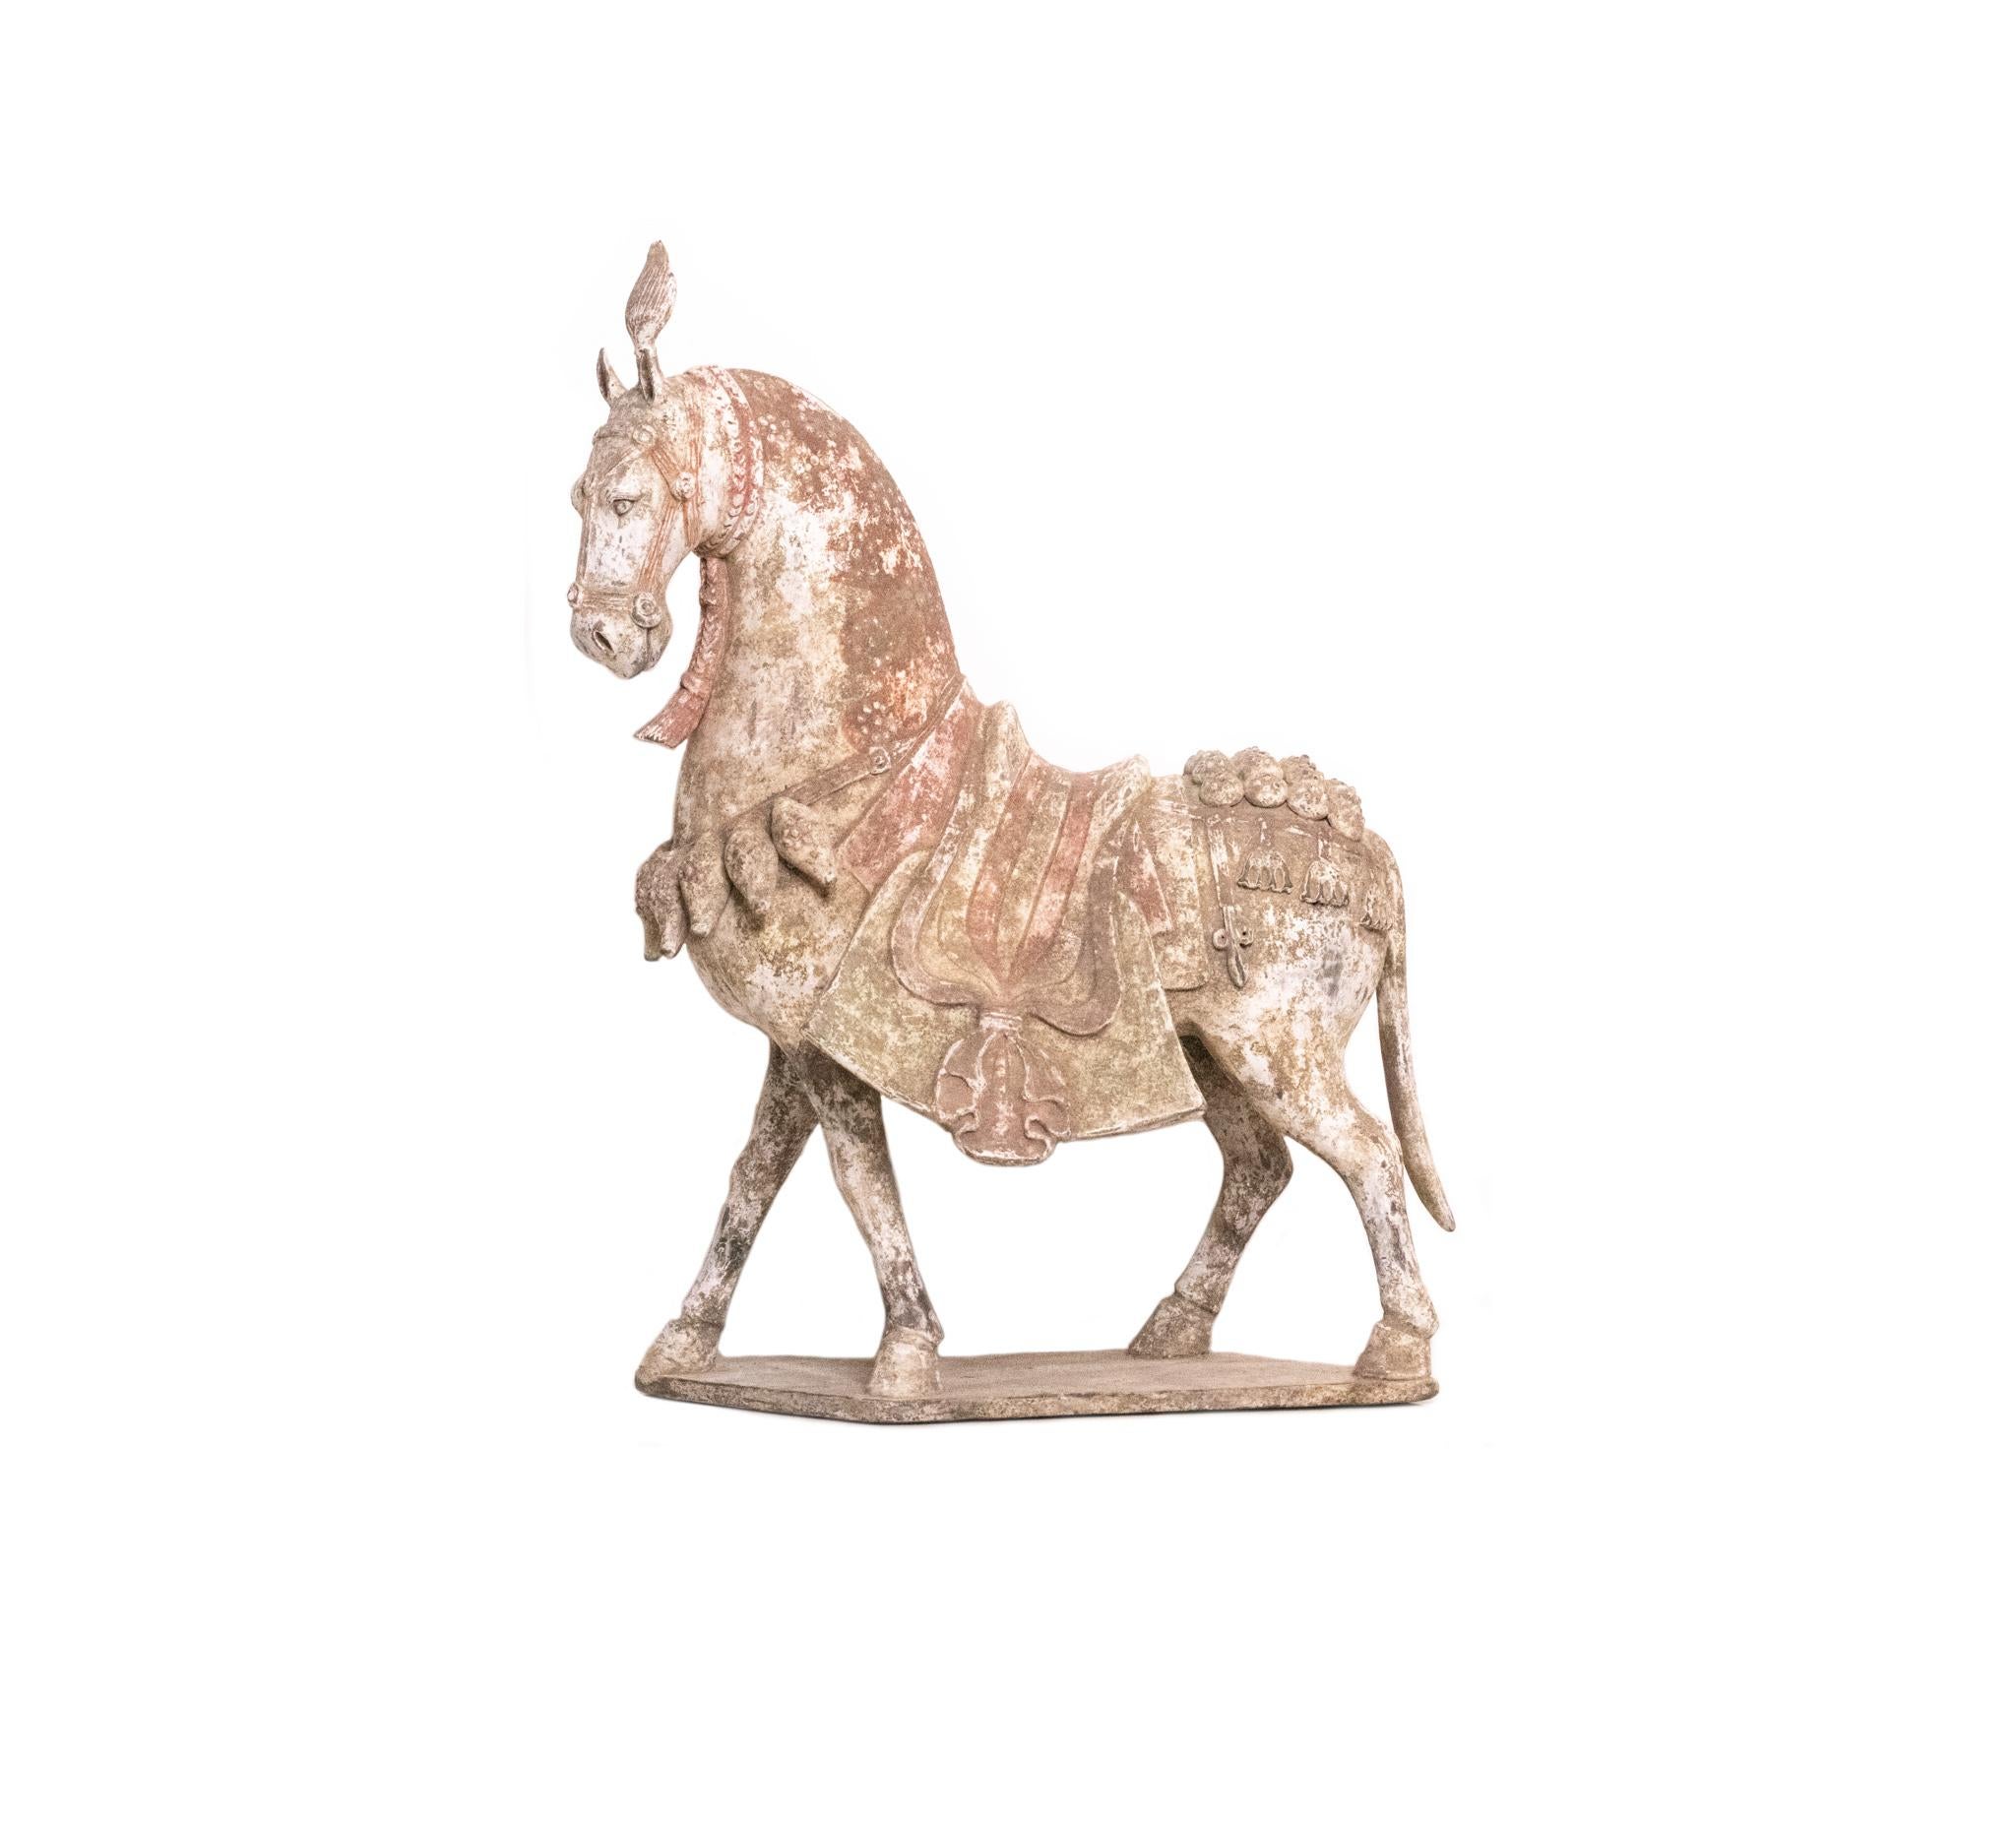 Rarissime cheval caparaçonné en poterie chinoise de la région de Qi Nord.

Une belle pièce sculpturale de grande taille, créée en Chine pendant la période de la dynastie Qi du Nord, entre 549 et 577 ADS. Cette statue de cheval est très finement